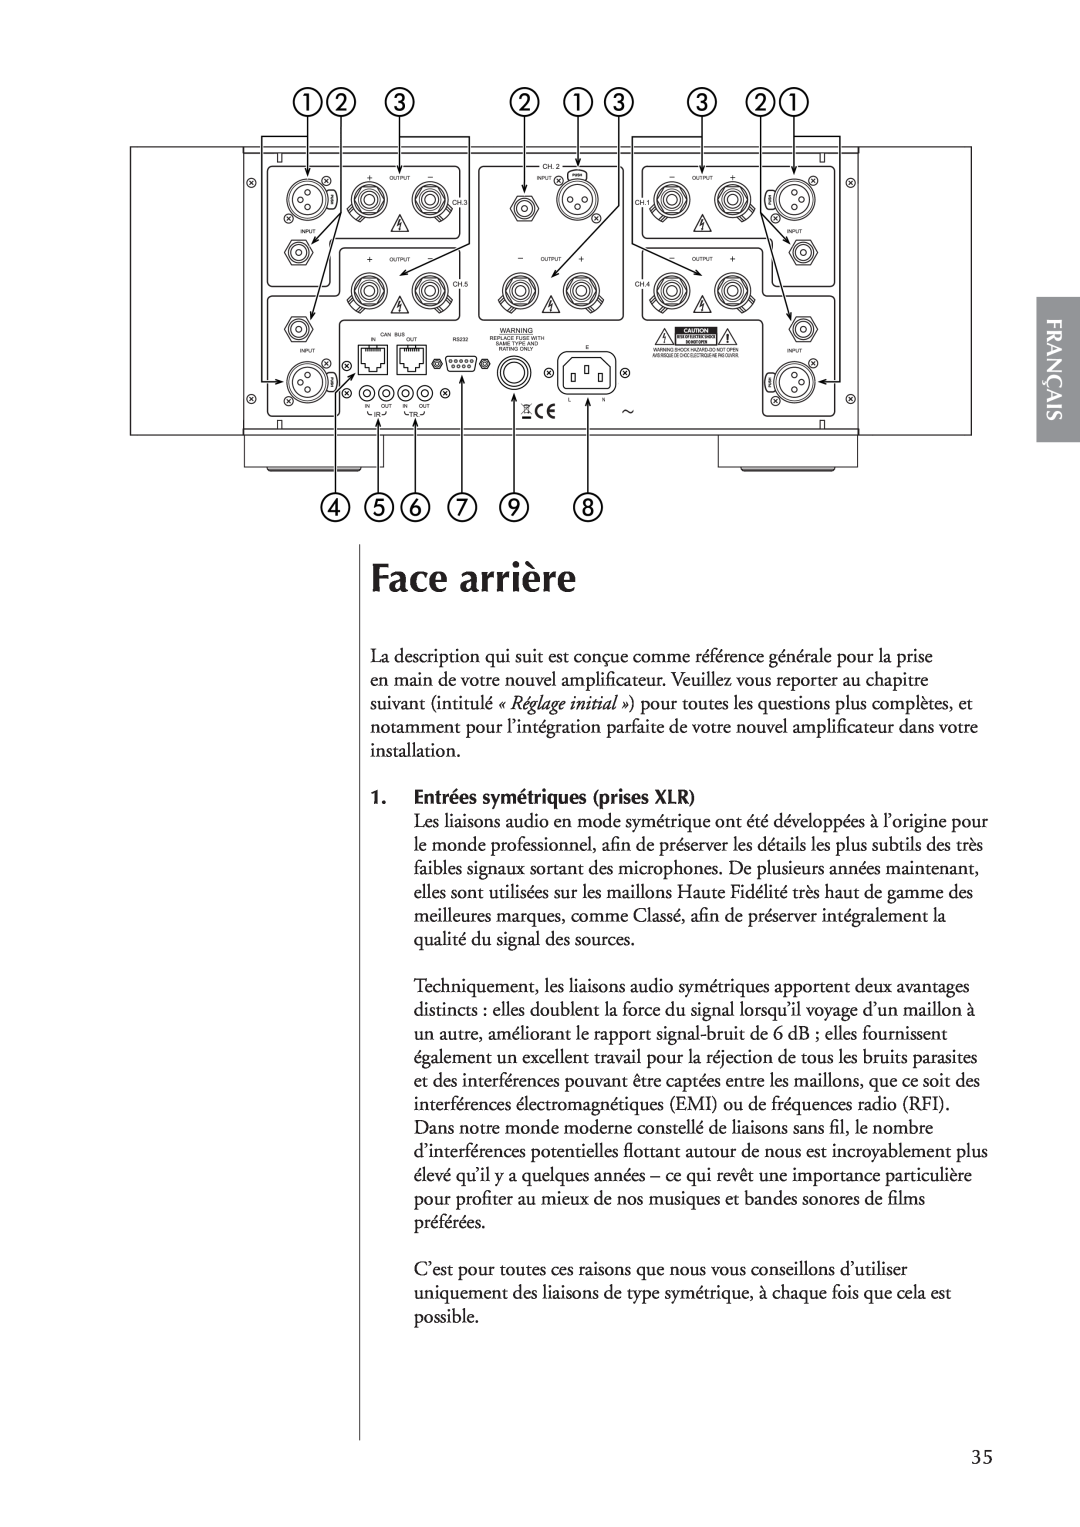 Classe Audio CA-5100 owner manual Face arrière, Français, Entrées symétriques prises XLR 